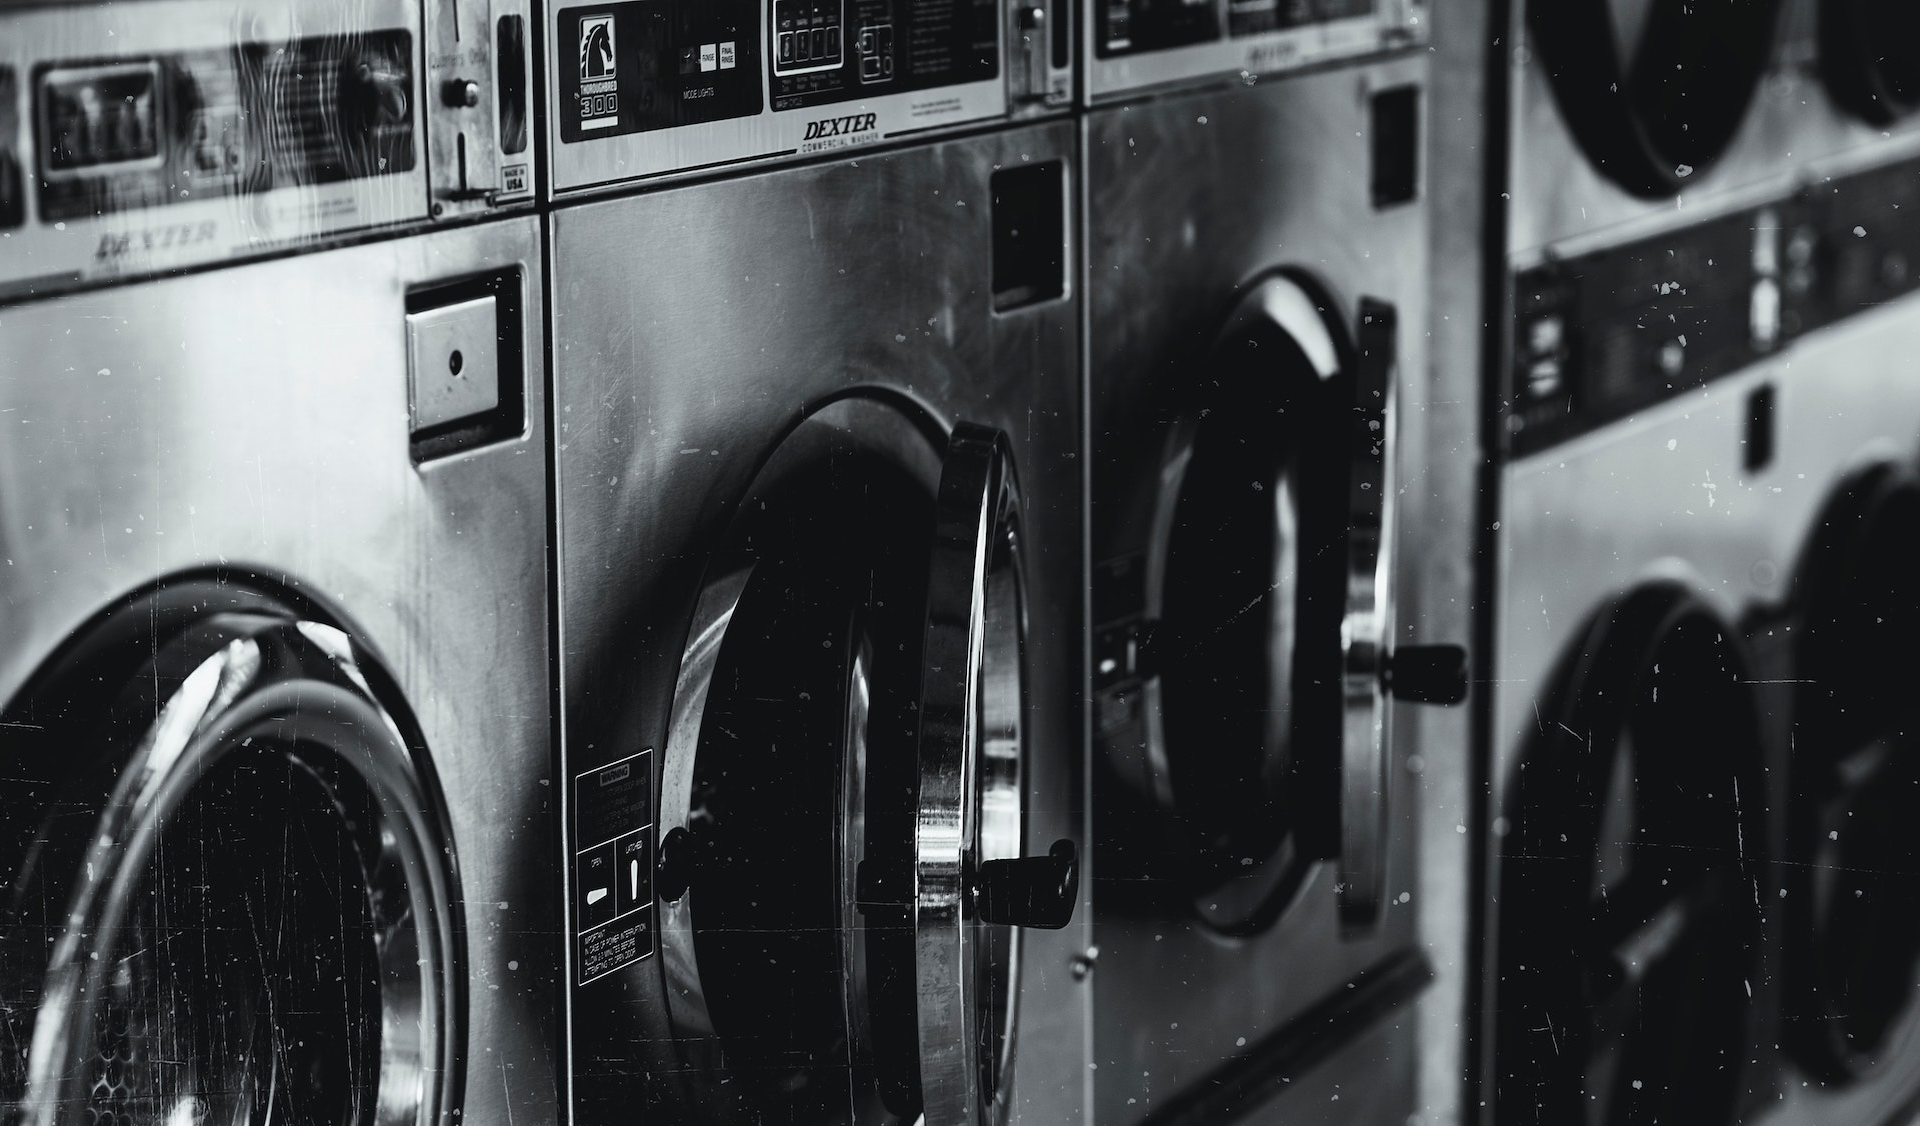 Bild von mehreren Waschmaschinen nebeneinander, die als Symbol für Greenwashing stehen